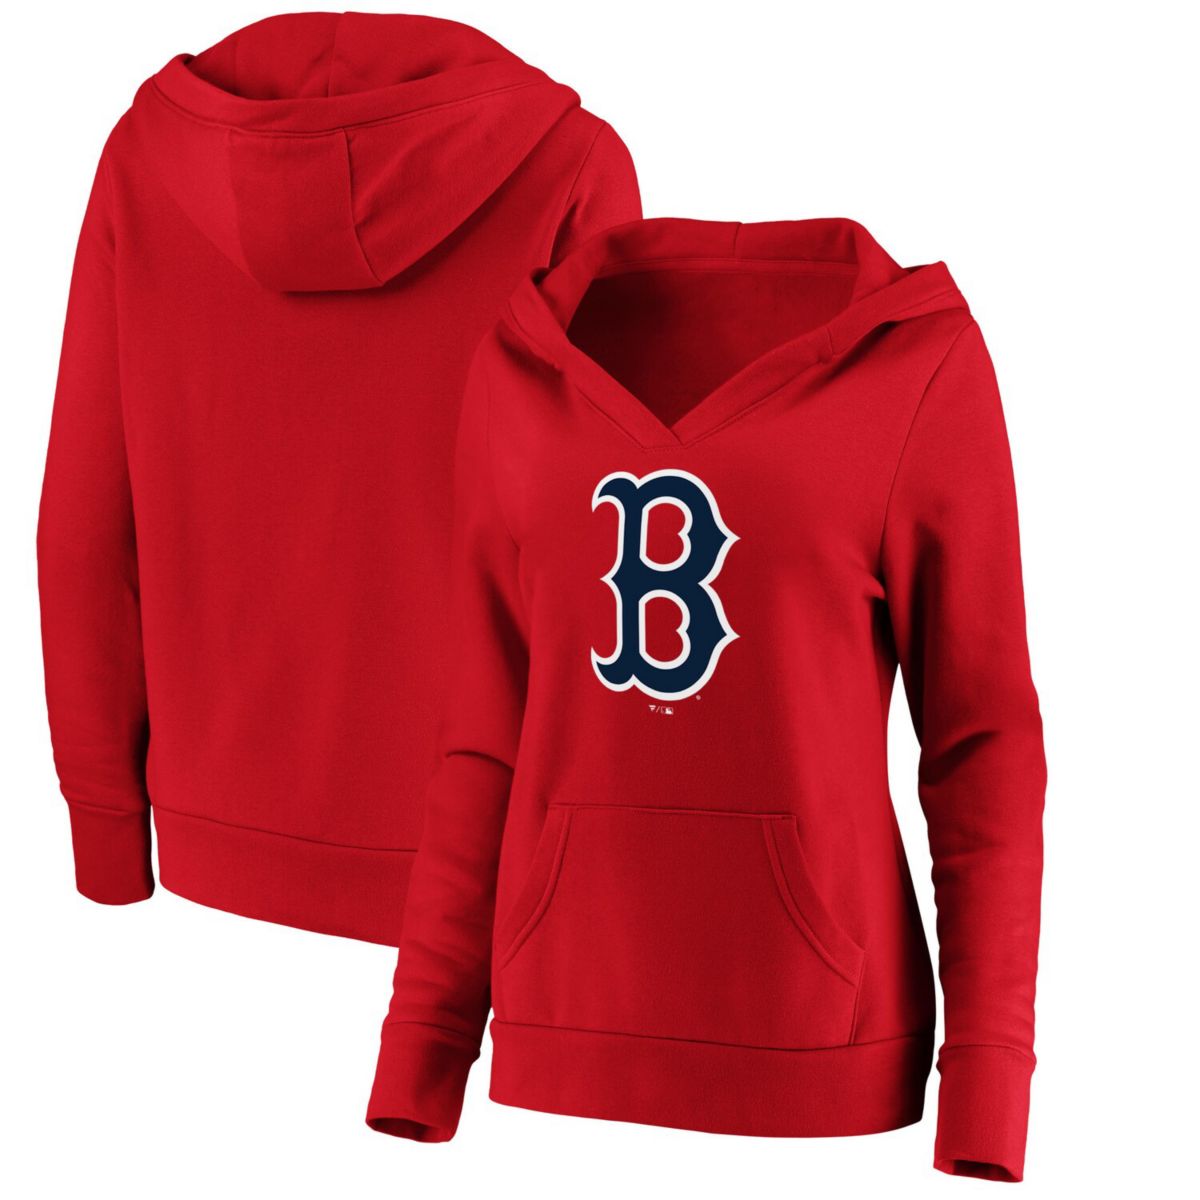 Женская толстовка с капюшоном и логотипом Fanatics Red Boston Red Sox, кроссовер с v-образным вырезом и официальным логотипом Fanatics